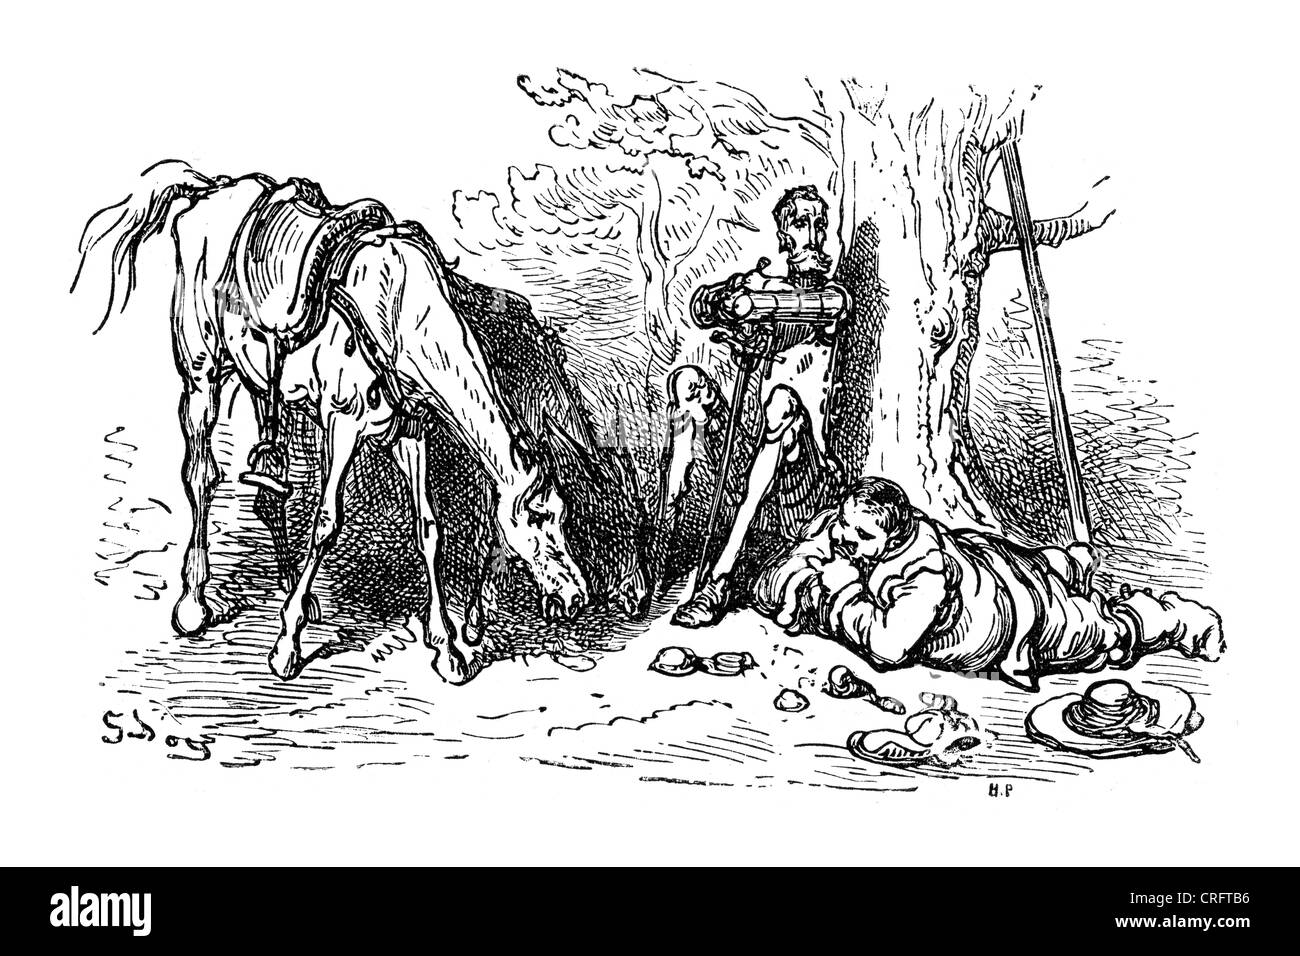 Don Quijote und Sancho Panzat. Illustration von Gustave Dore von Don Quijote. Stockfoto